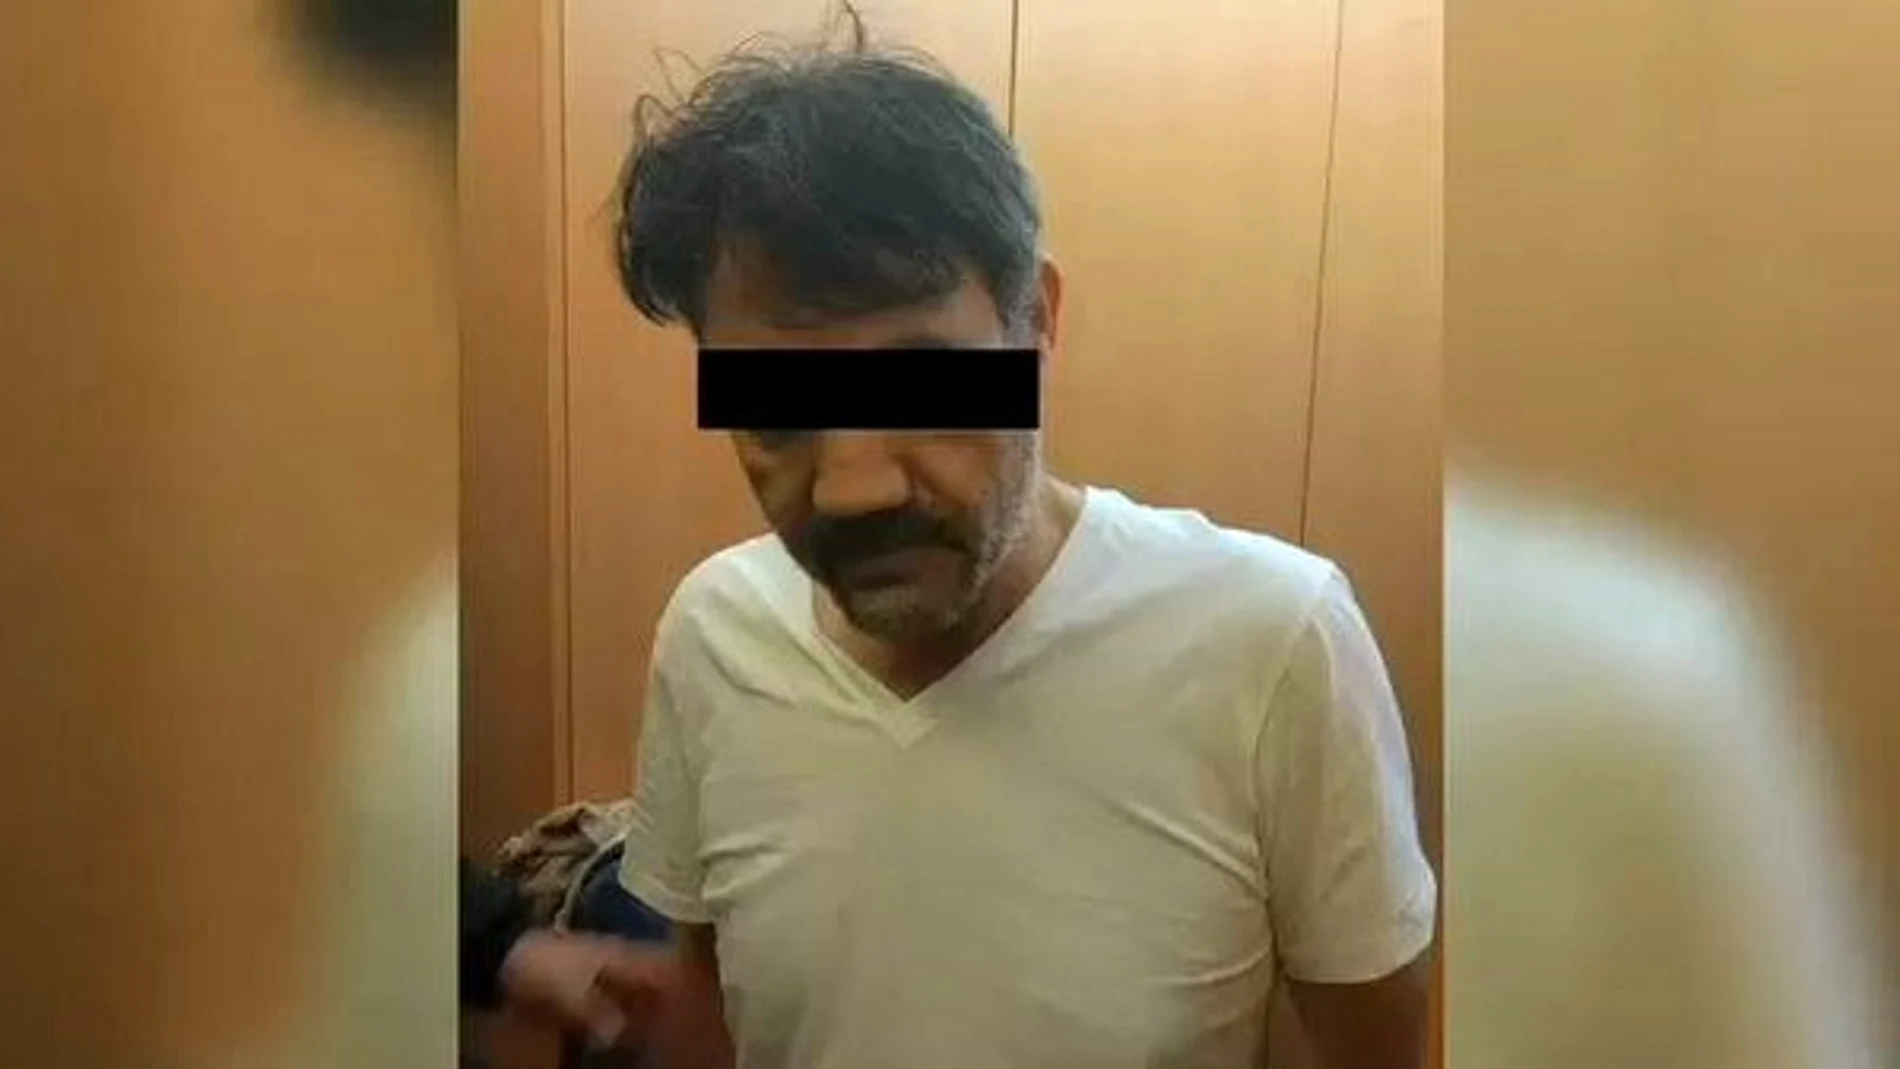 Fotografía distribuida a medios informativos de México que muestra la detención del sucesor de "el Chapo"Guzmán, Dámaso López Núñez.